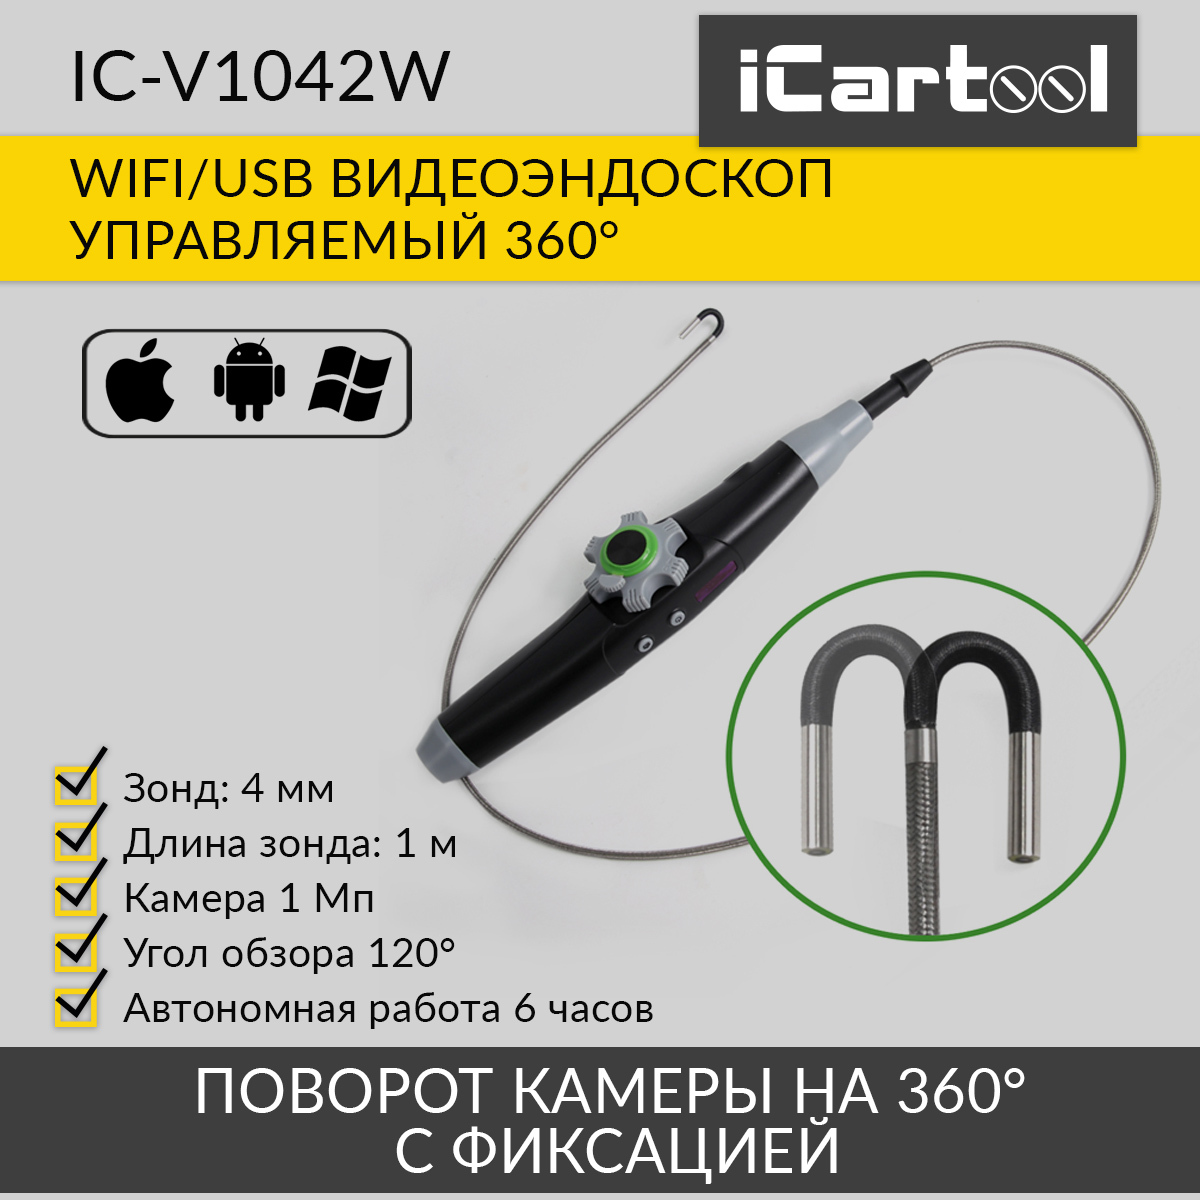 Видеоэндоскоп управляемый iCartool IC-V1042W WIFI/USB, 1Мп, 1168х720, 1м, 4мм зонд, 360° видеоэндоскоп управляемый 4 5 1мп 1280х720 1м 4мм зонд 360° icartool ic vc1042w